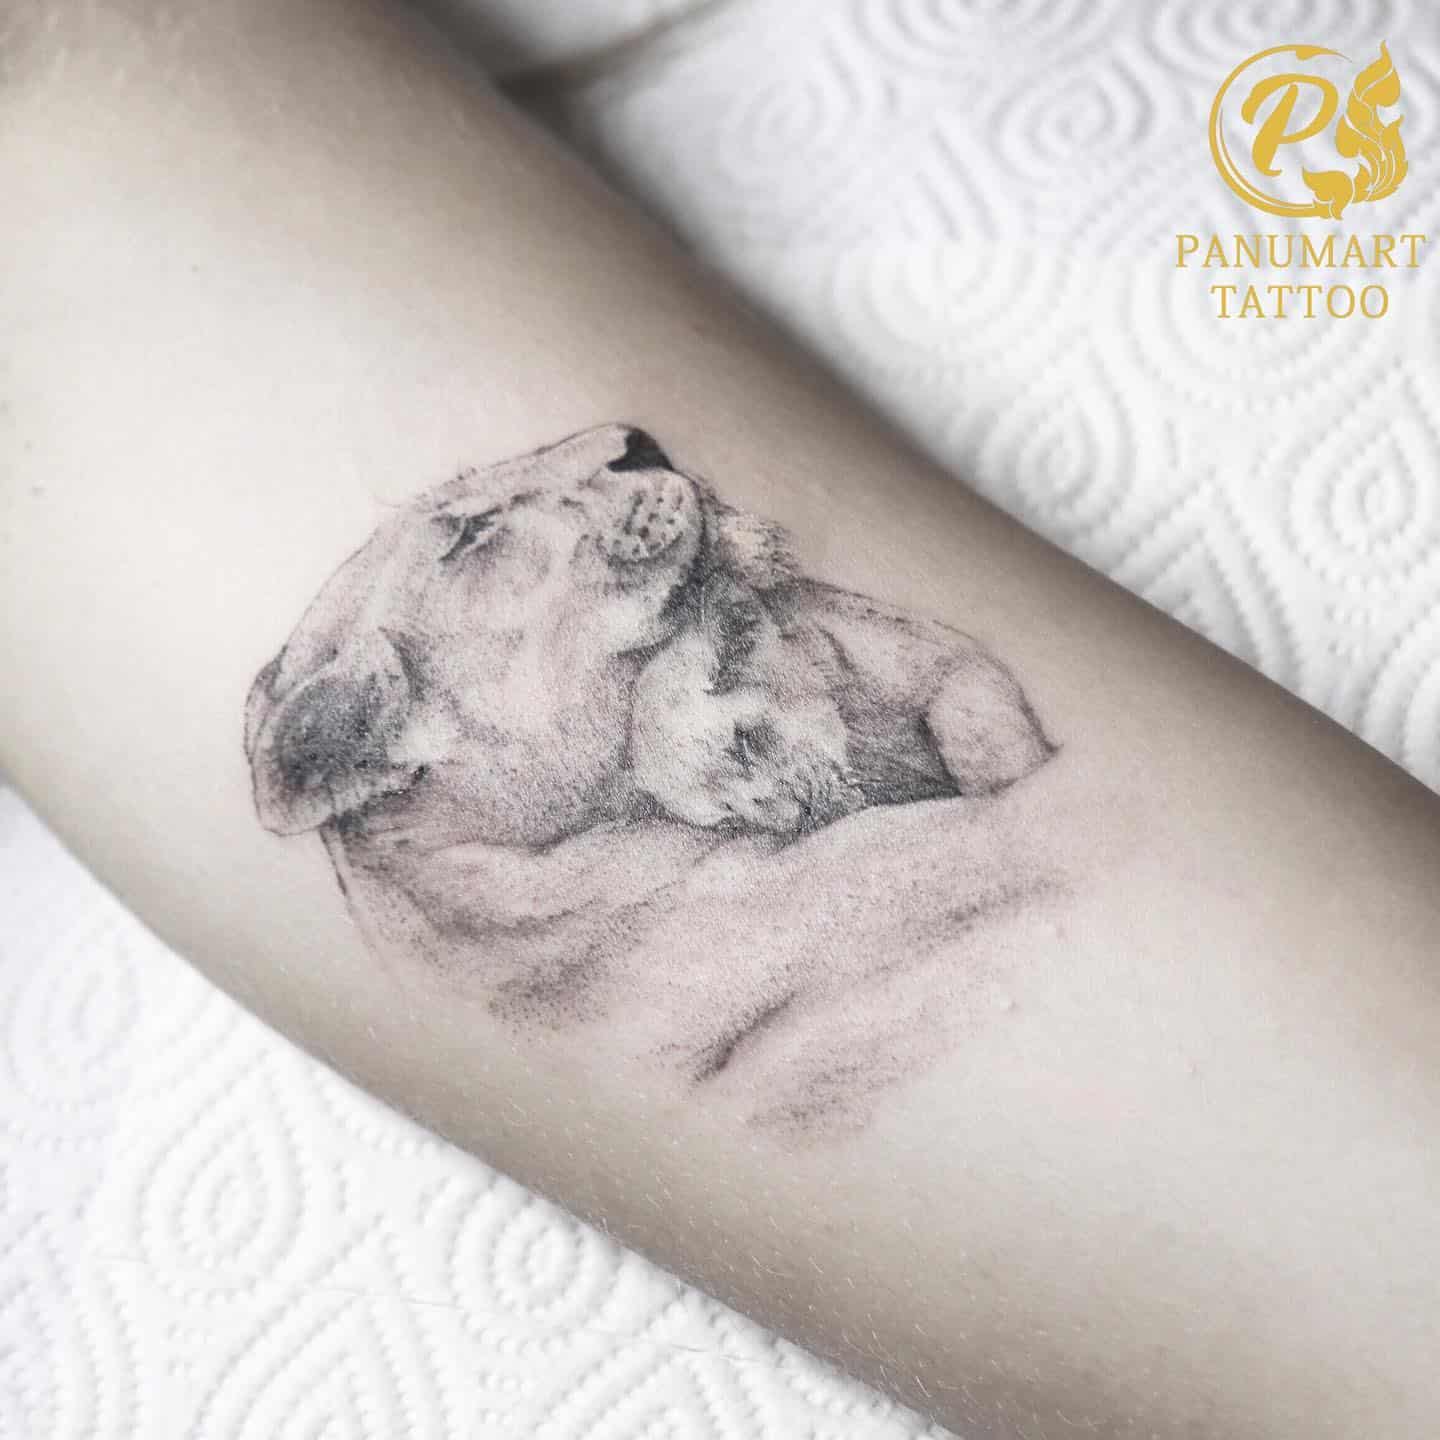 Gorilla Tattoo Ideas 41